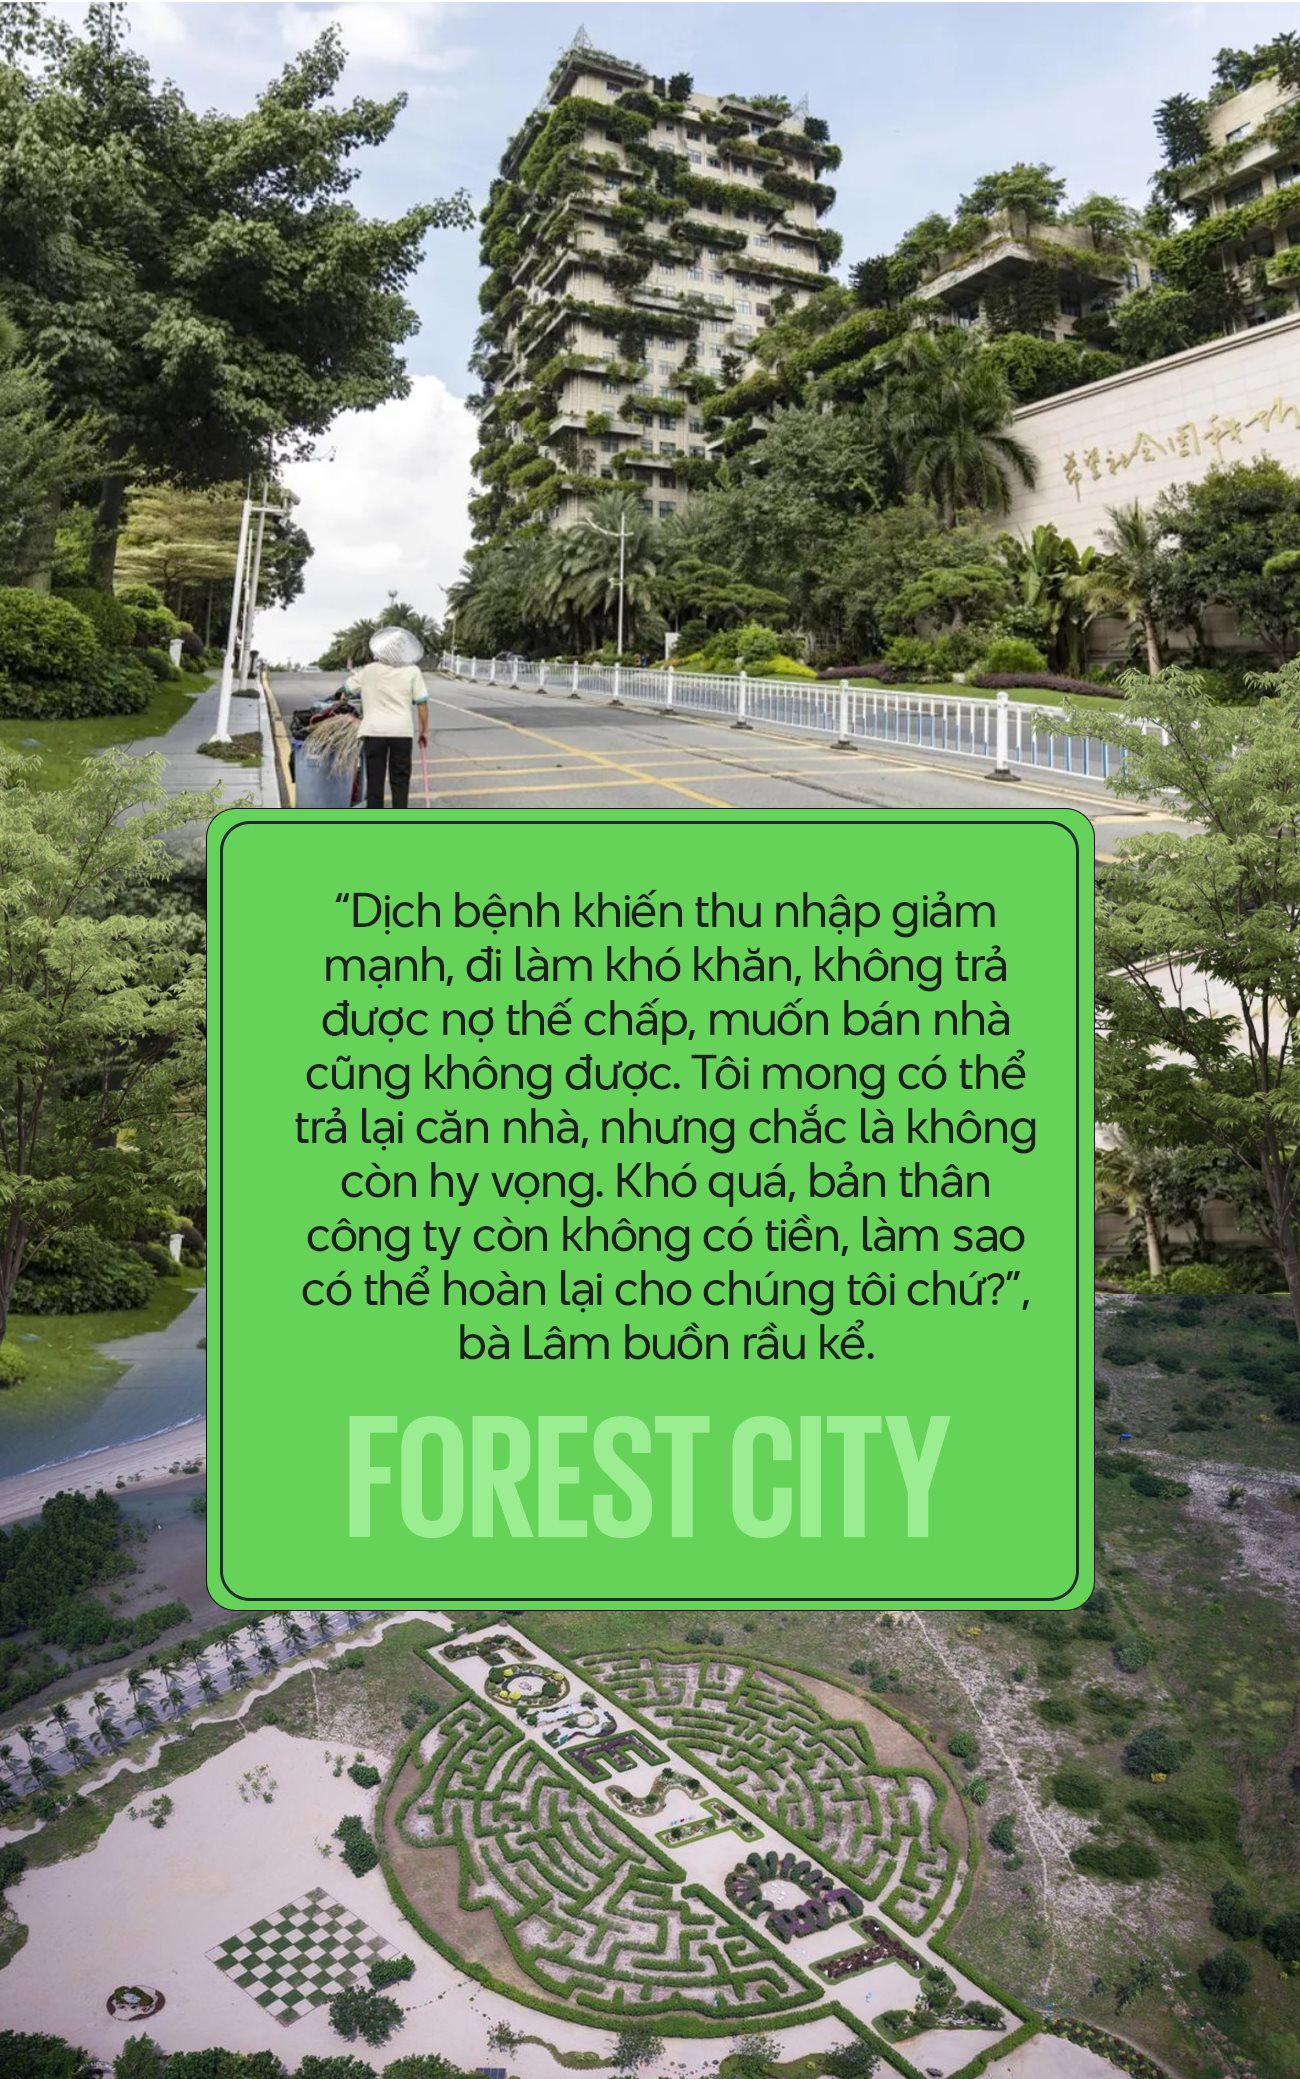 Forest City - ‘Cạm bẫy 5 sao’ của Country Garden: Nhà mua 6 năm chưa có giấy tờ, chủ căn hộ không thể bán hay cho thuê vì chẳng ai dám đến - Ảnh 5.